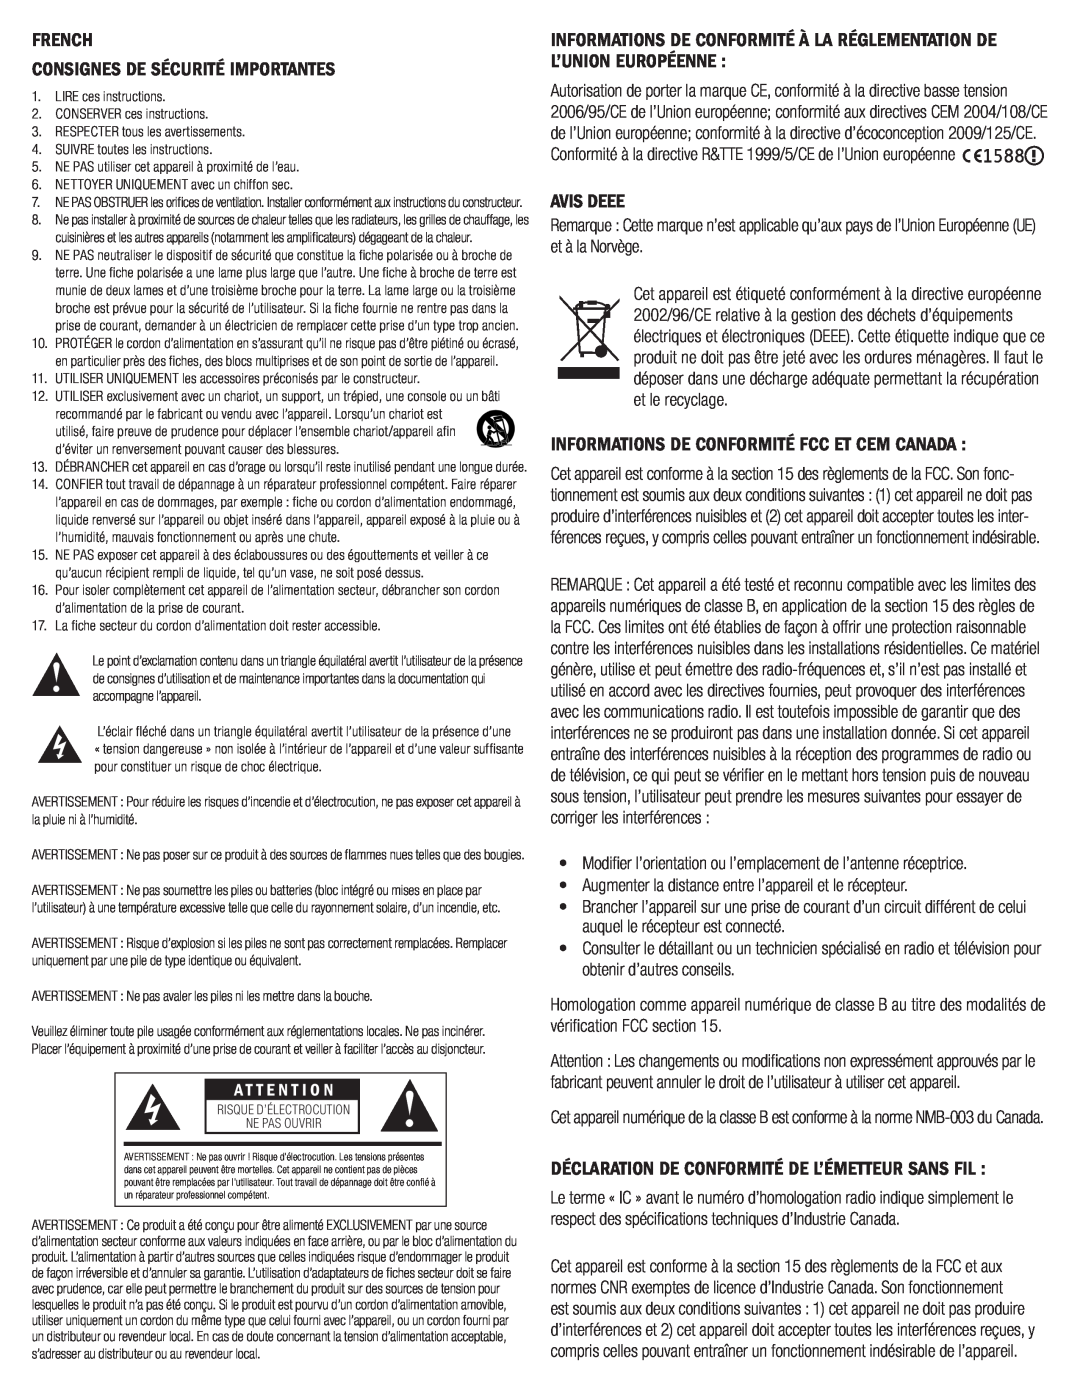 Klipsch G-17 AIR French Consignes De Sécurité Importantes, Avis Deee, Informations De Conformité Fcc Et Cem Canada 